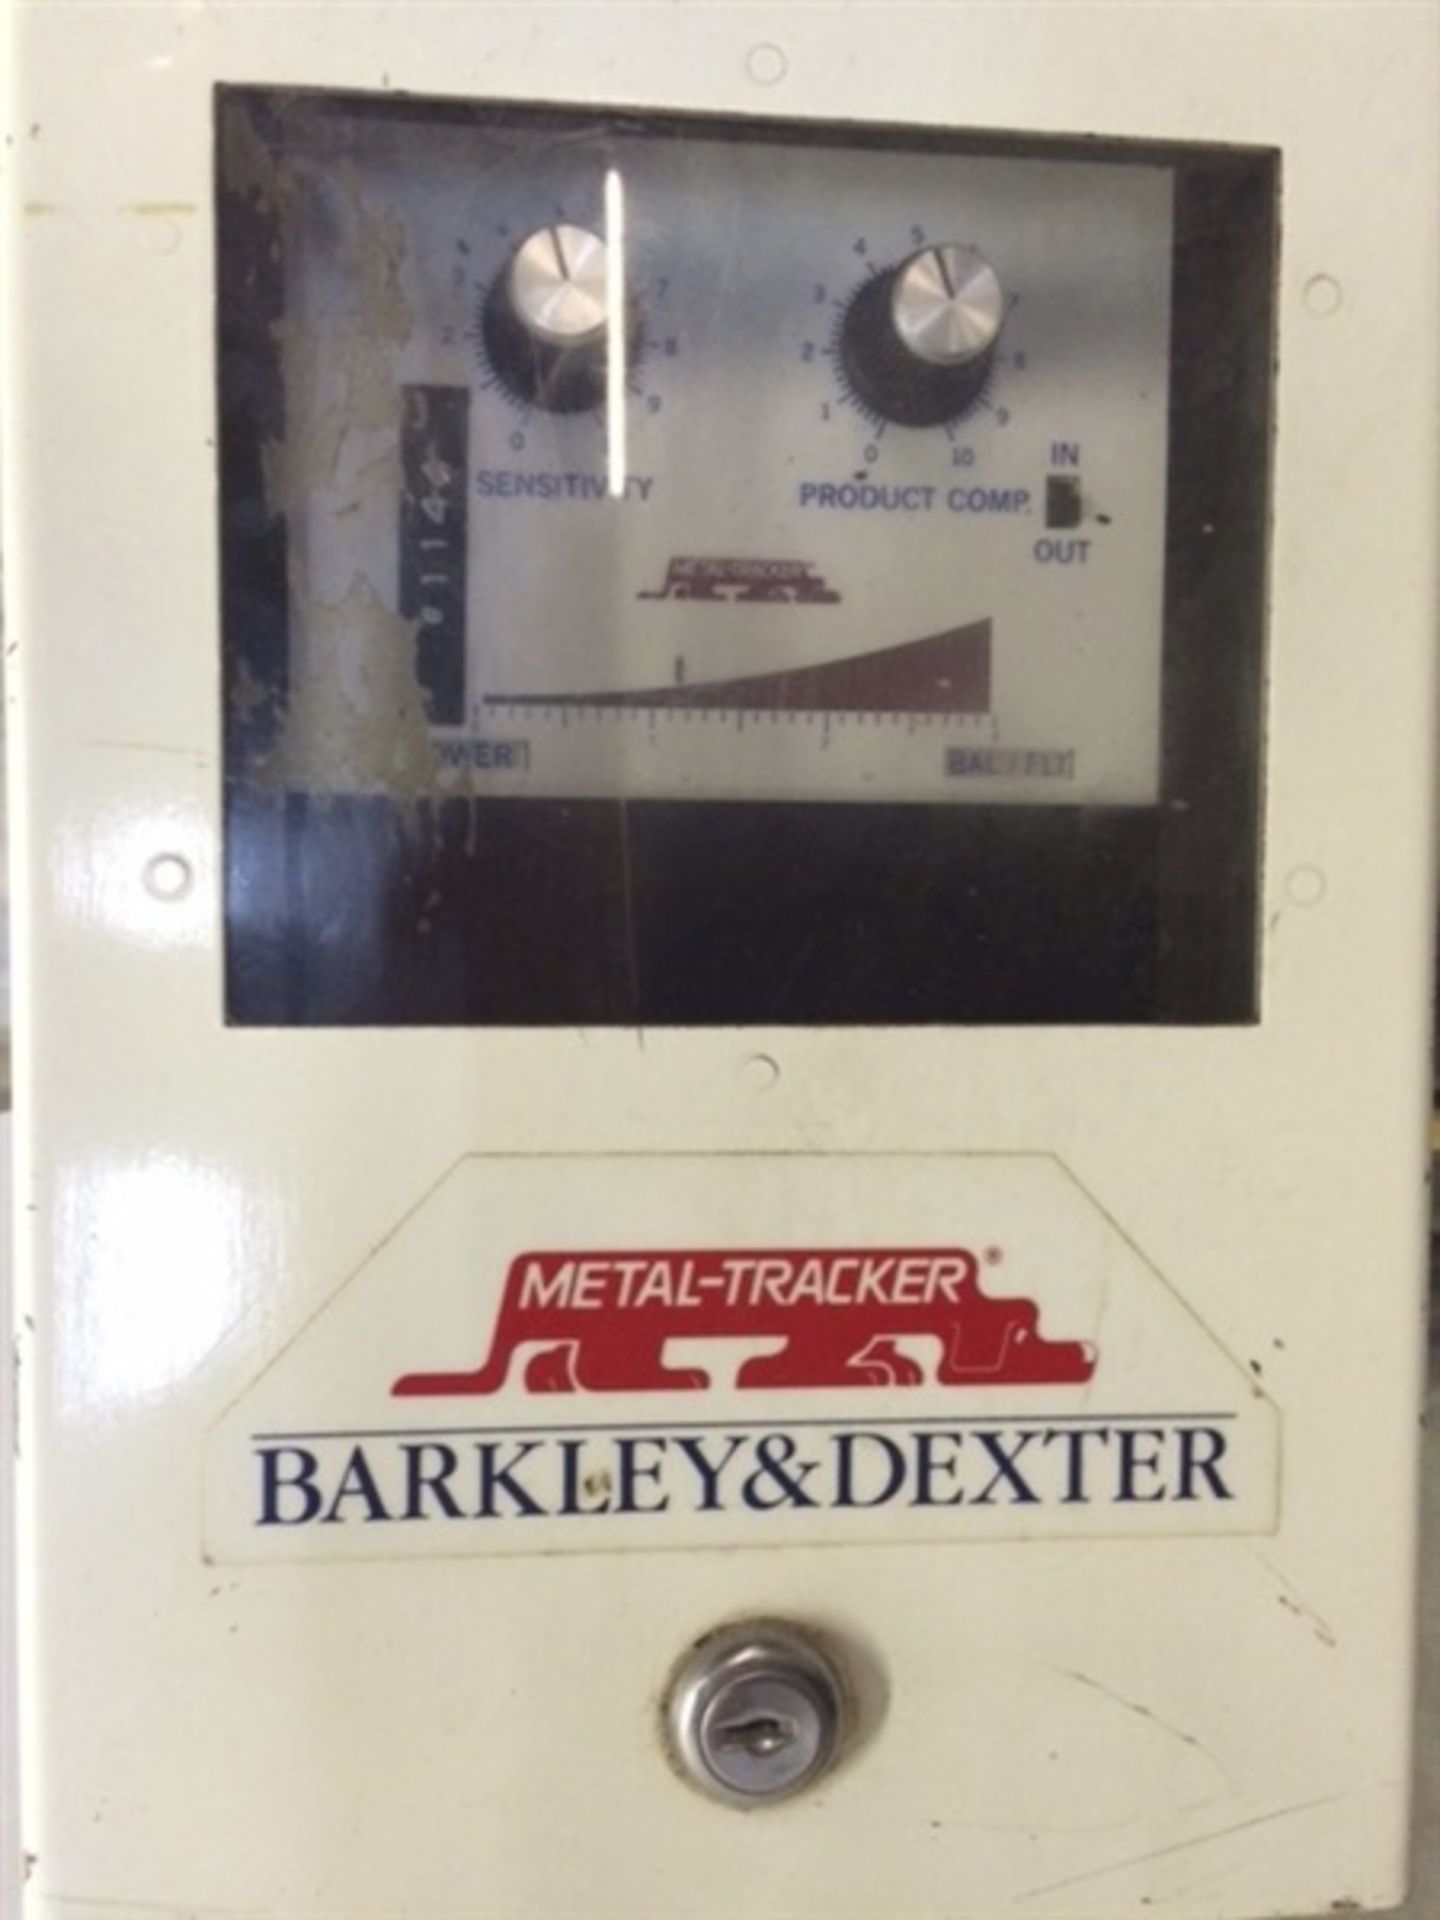 Barkley & Dexter Metal-Tracker Metal Detector - Image 2 of 3